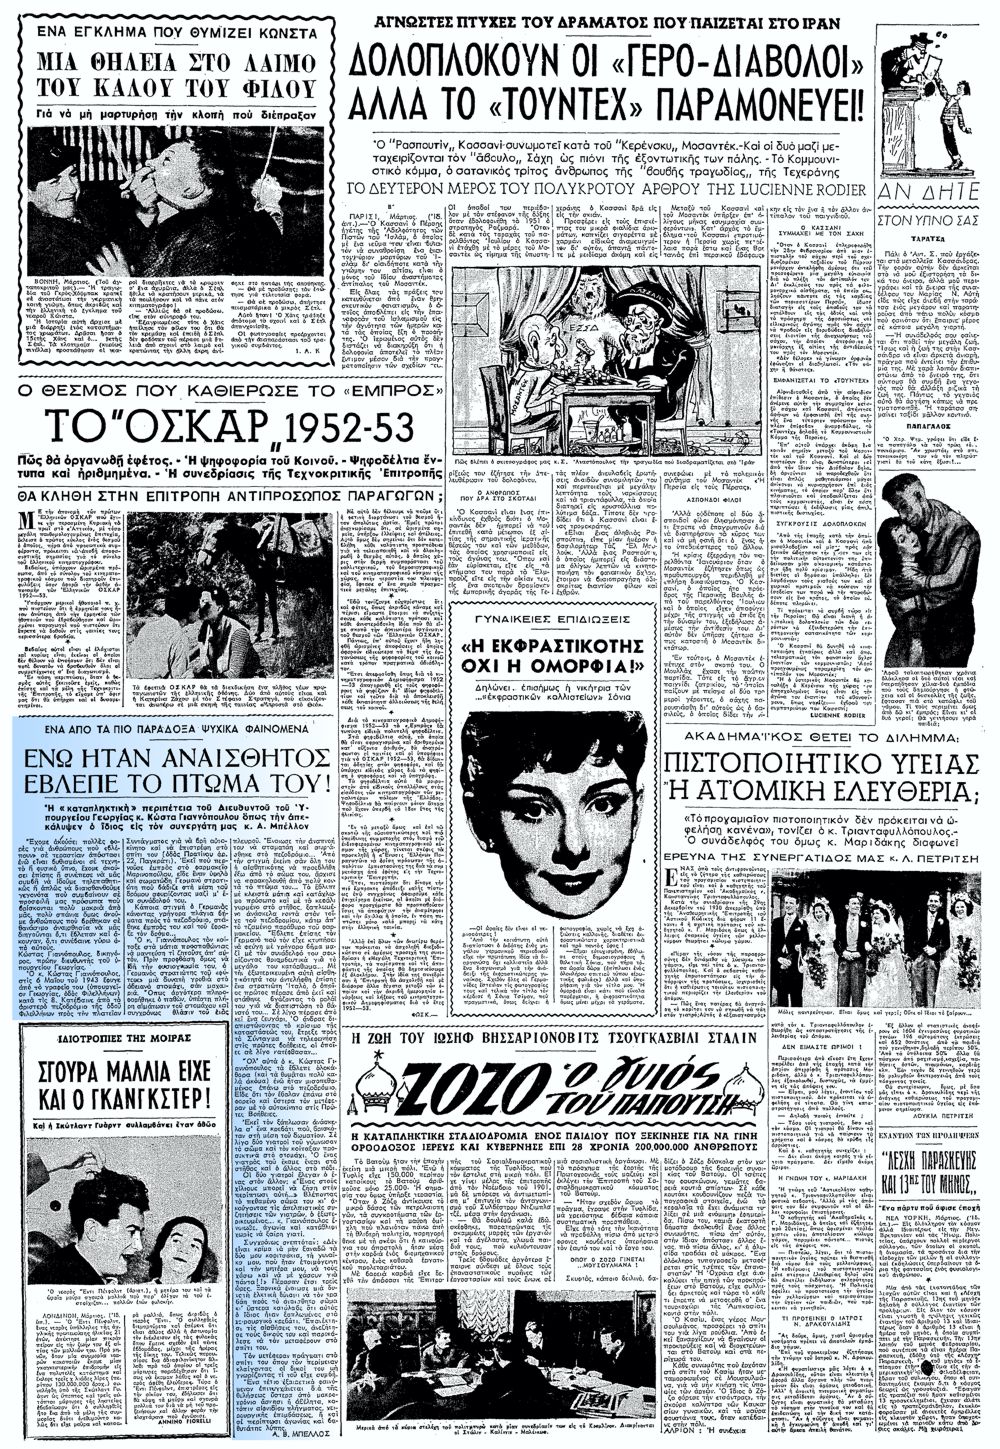 Το άρθρο, όπως δημοσιεύθηκε στην εφημερίδα "ΕΜΠΡΟΣ", στις 13/03/1953